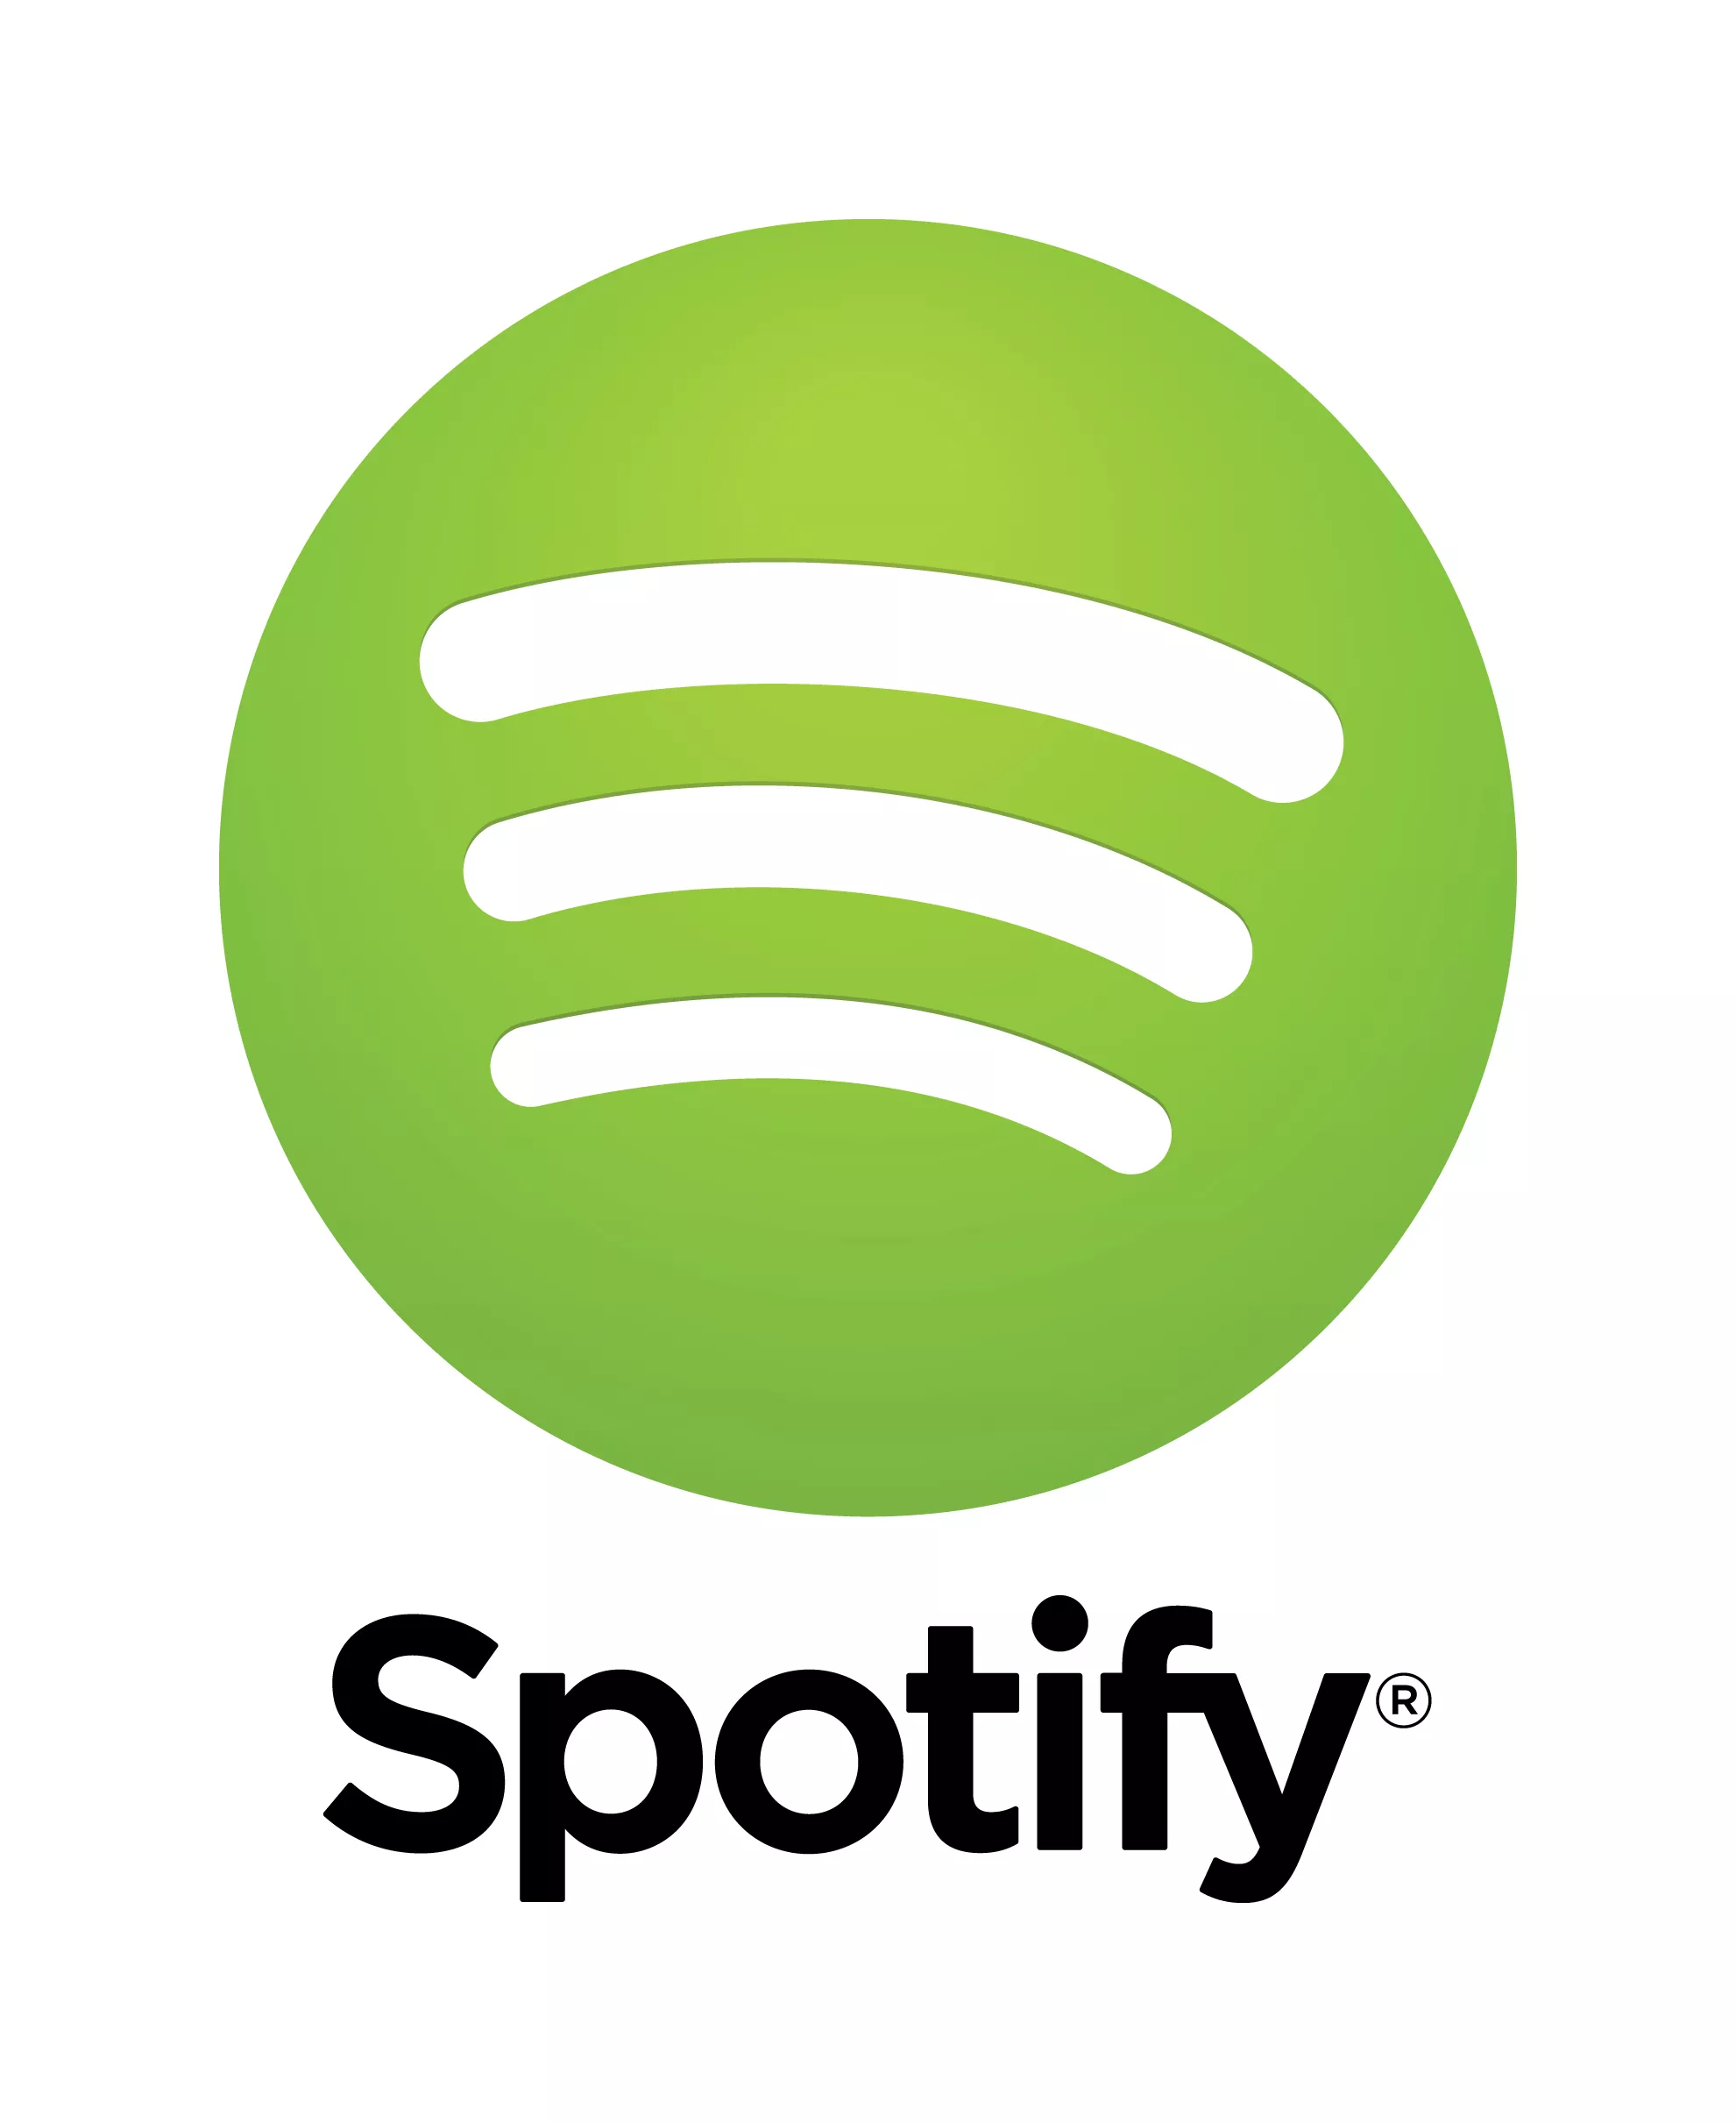 Spotify undskylder efter kritik af ny persondatapolitik